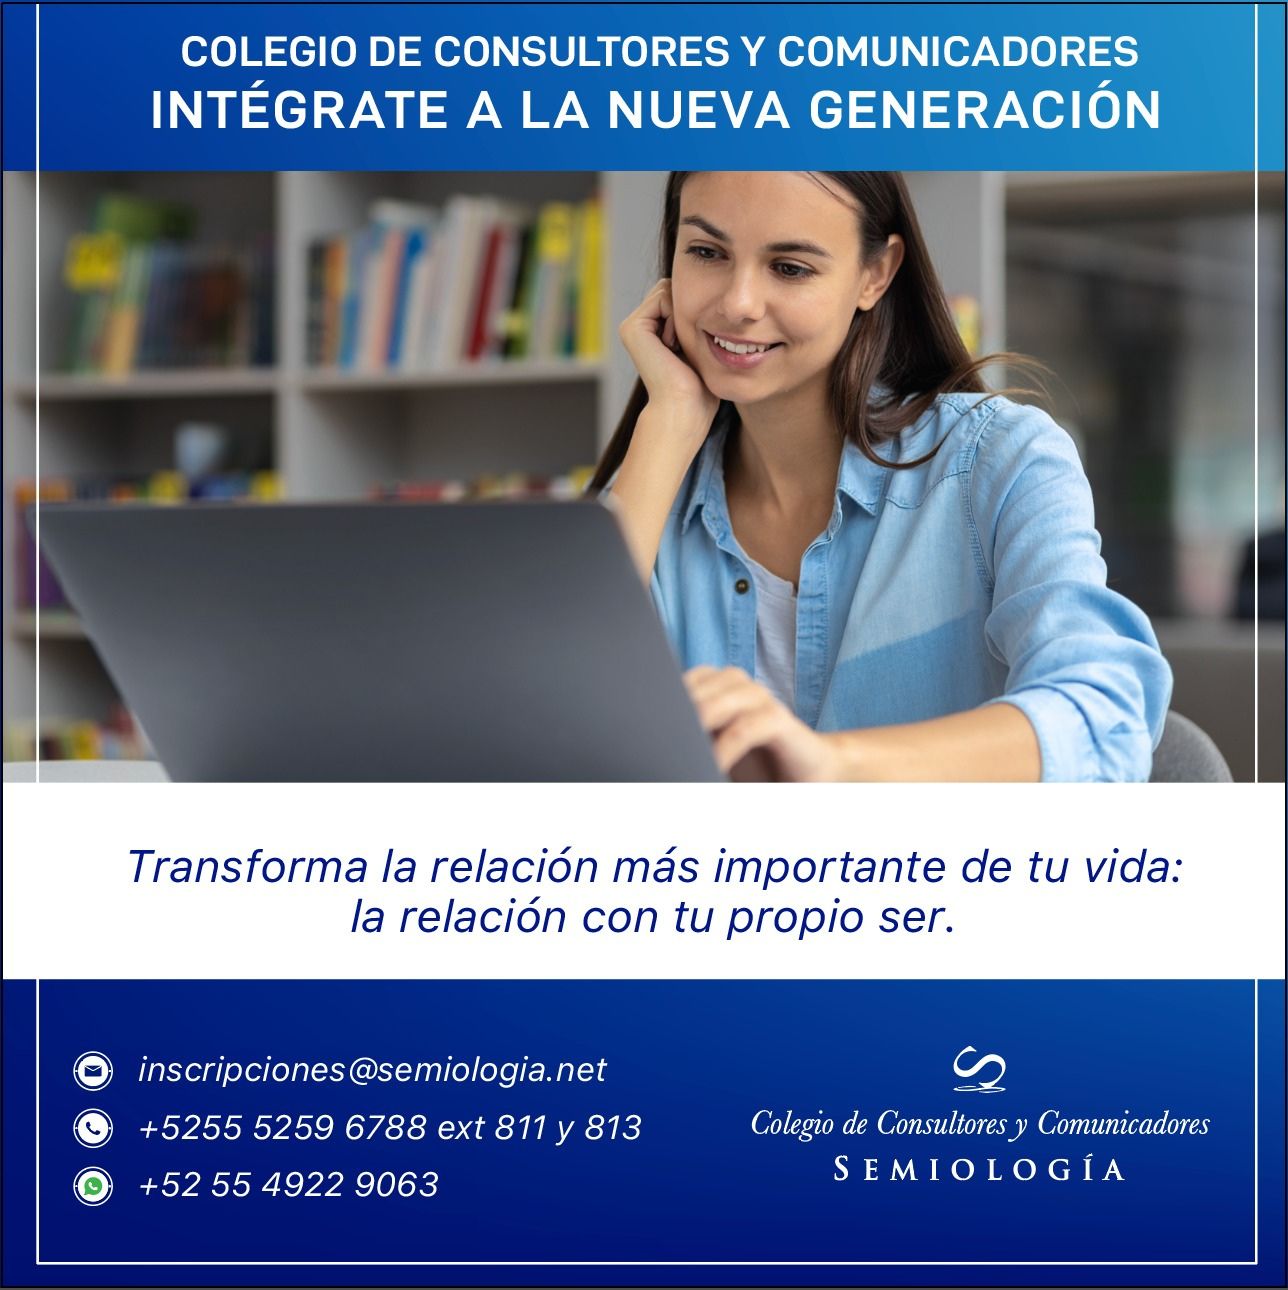 Colegio de consultores y comunicadores - Alfonso Ruiz Soto